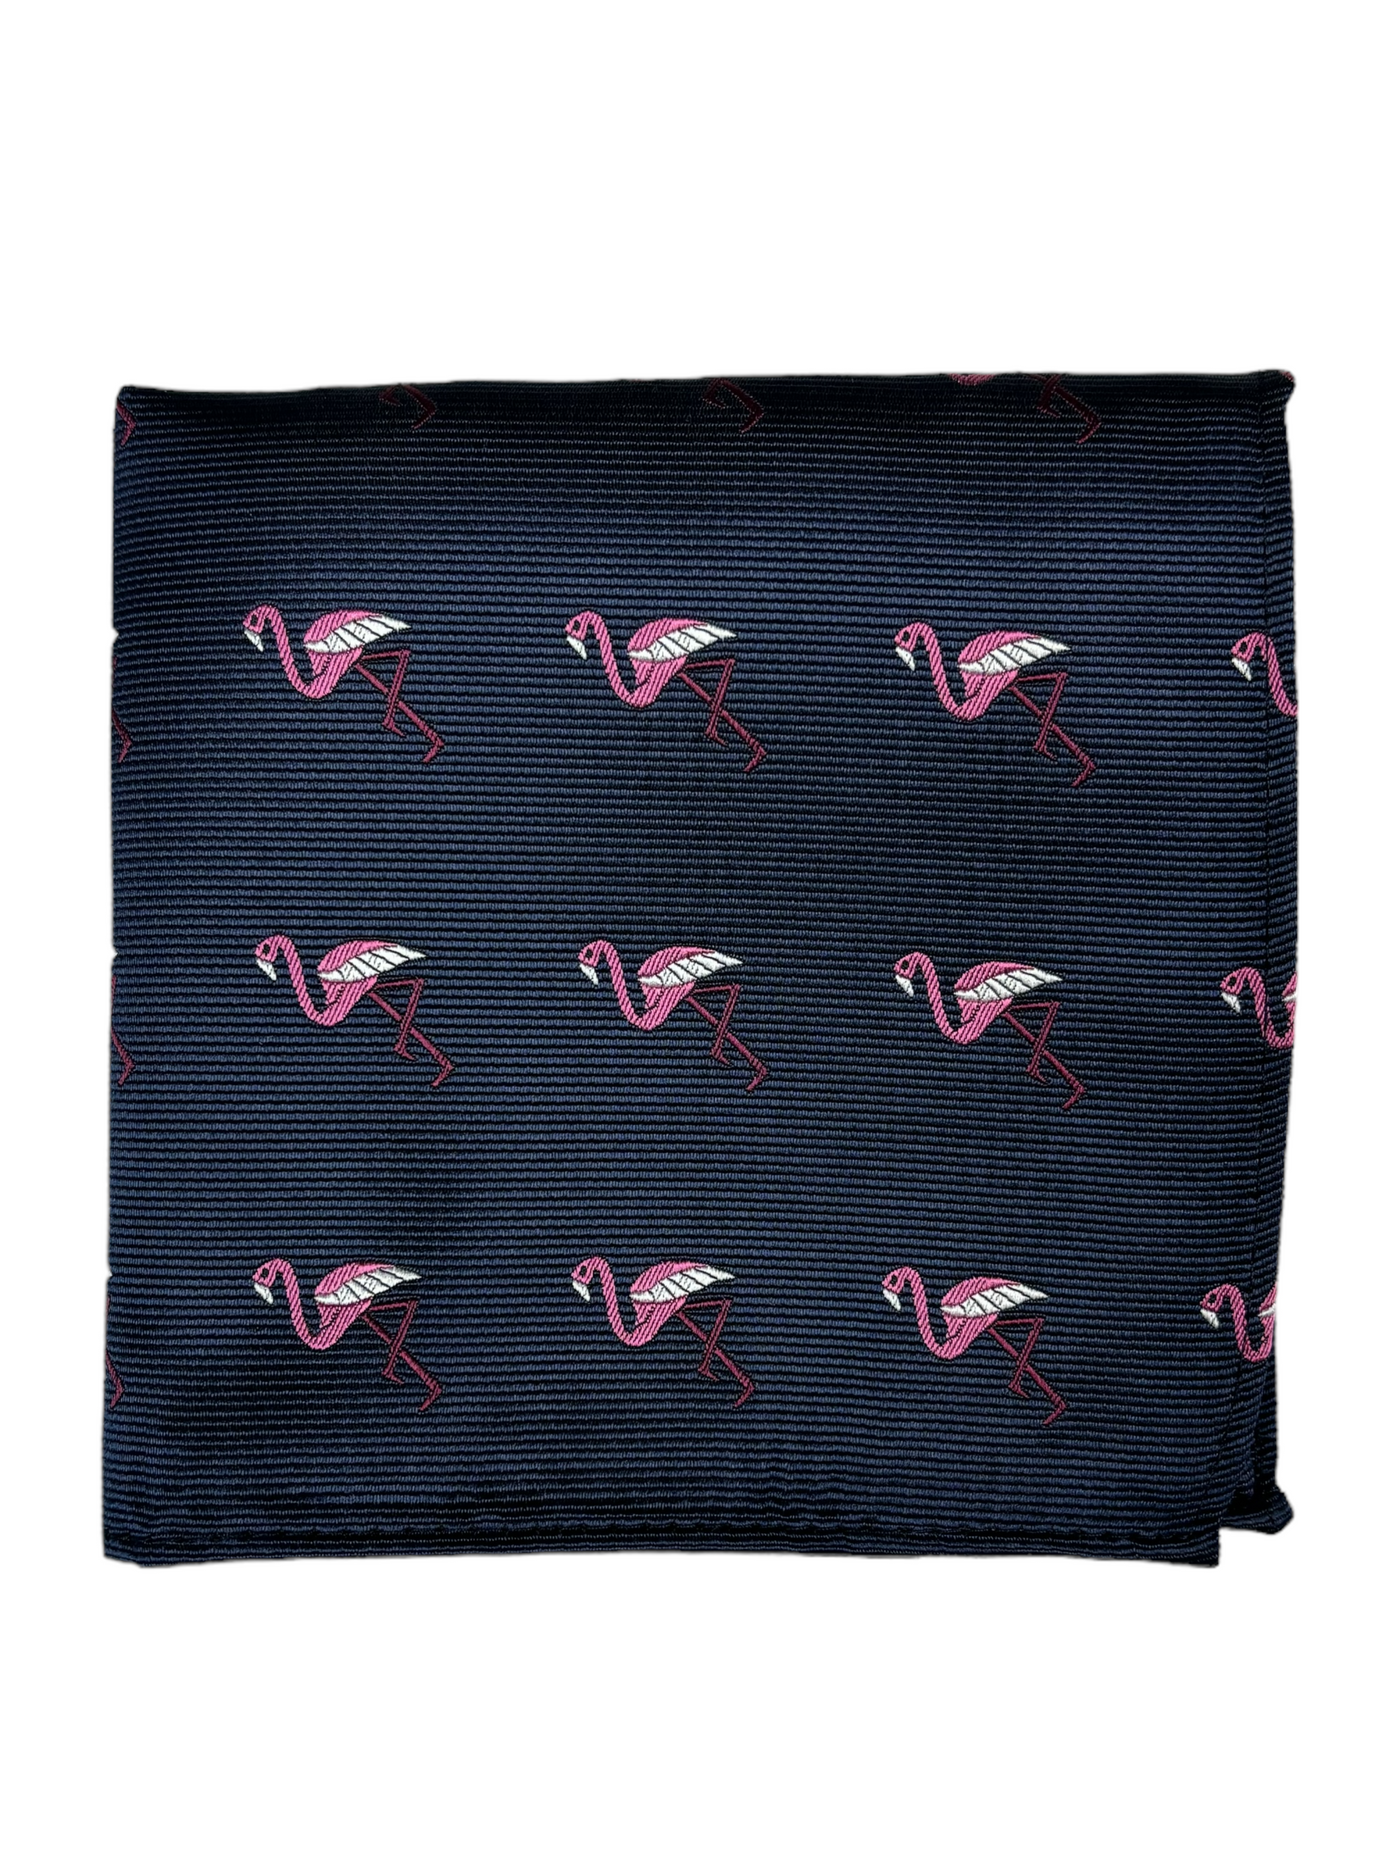 Mouchoir de poche marine à motif de flamants roses